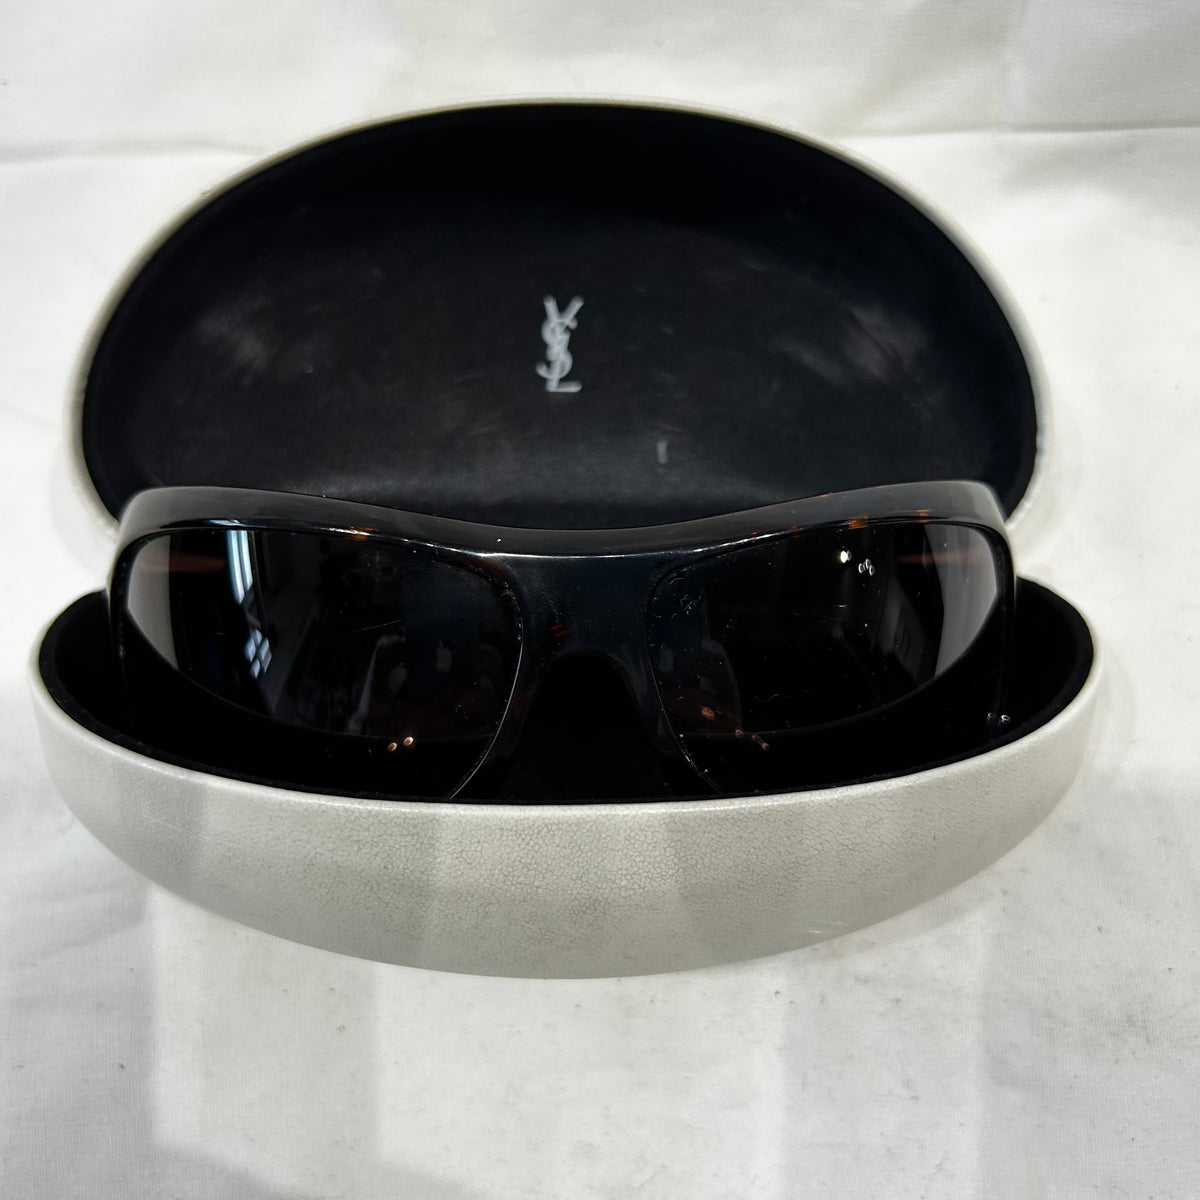 Yves Saint Laurent Vintage Tortoiseshell YSL6149 Sunglasses